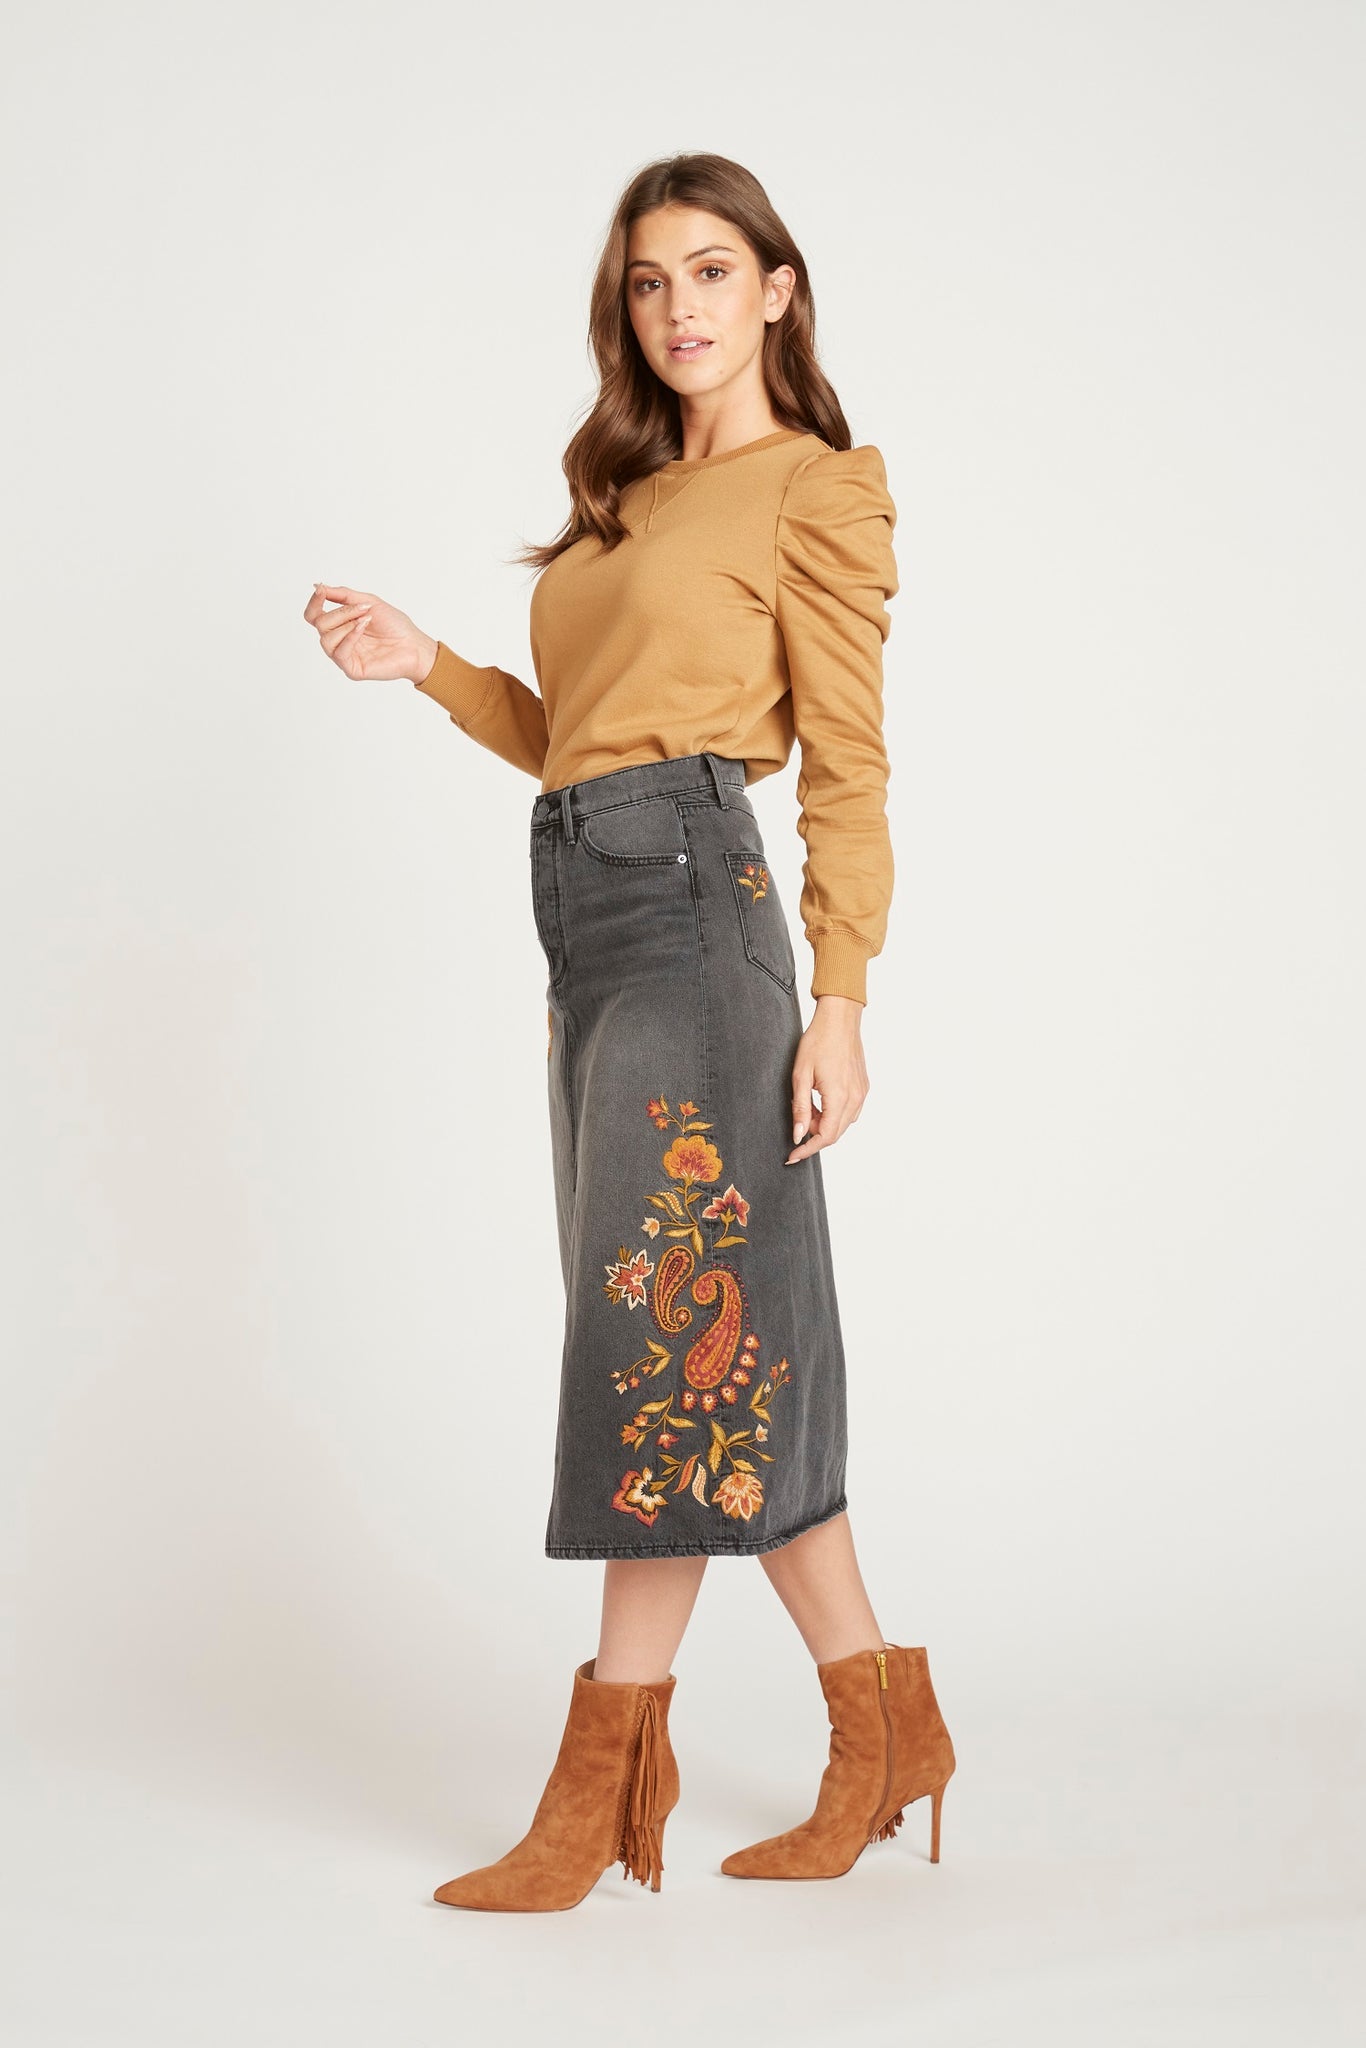 Piper Skirt - Autumn Paisley